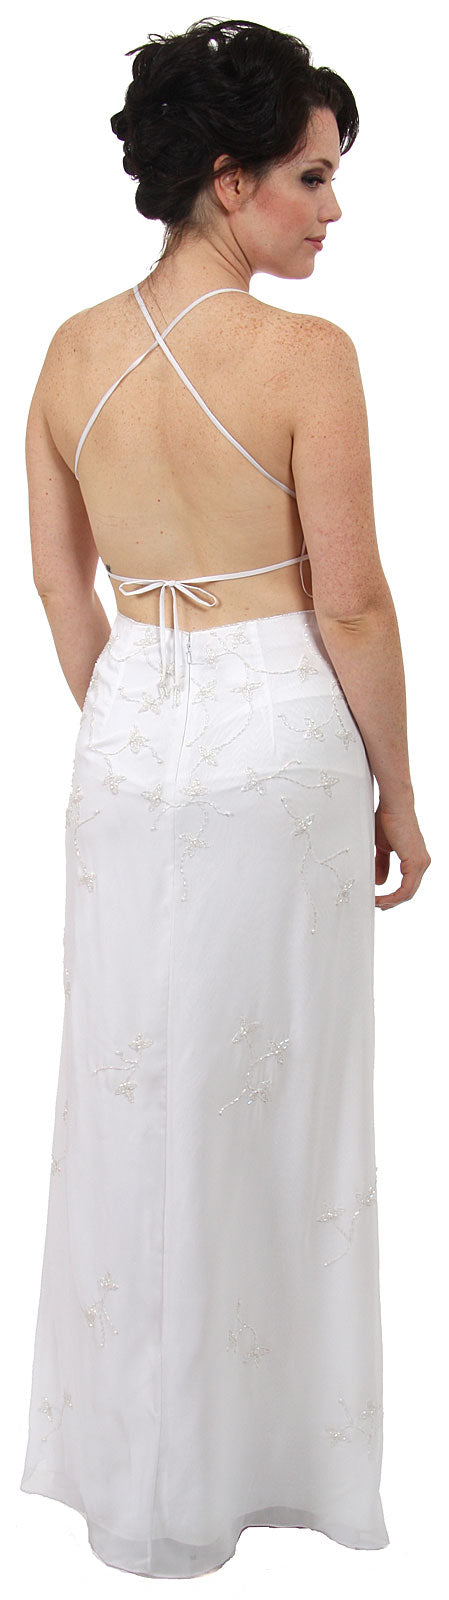 Image of Beaded Formal Full Length Evening Dress in White